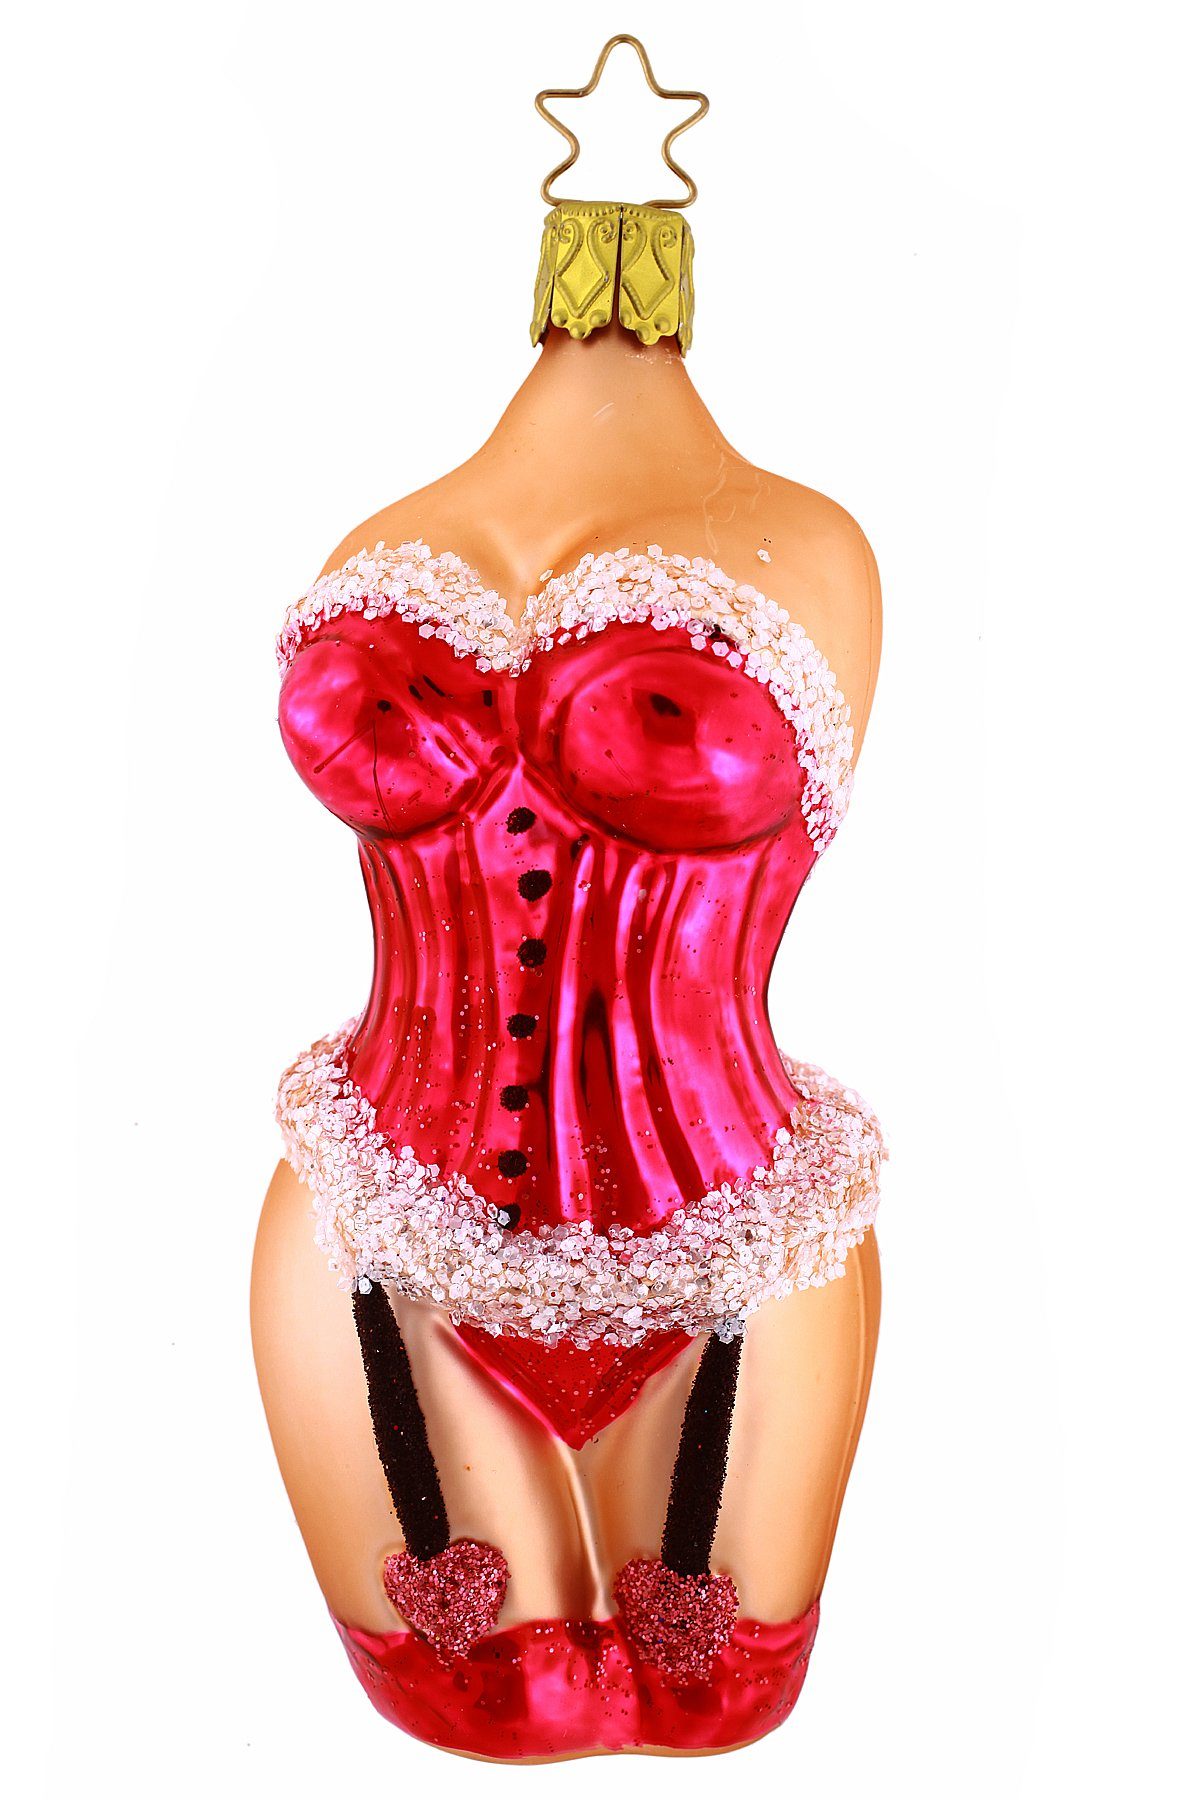 Hamburger Weihnachtskontor Christbaumschmuck Korsage pink, Inge-Glas® Manufaktur - Dekohänger - mundgeblasen - handdekoriert